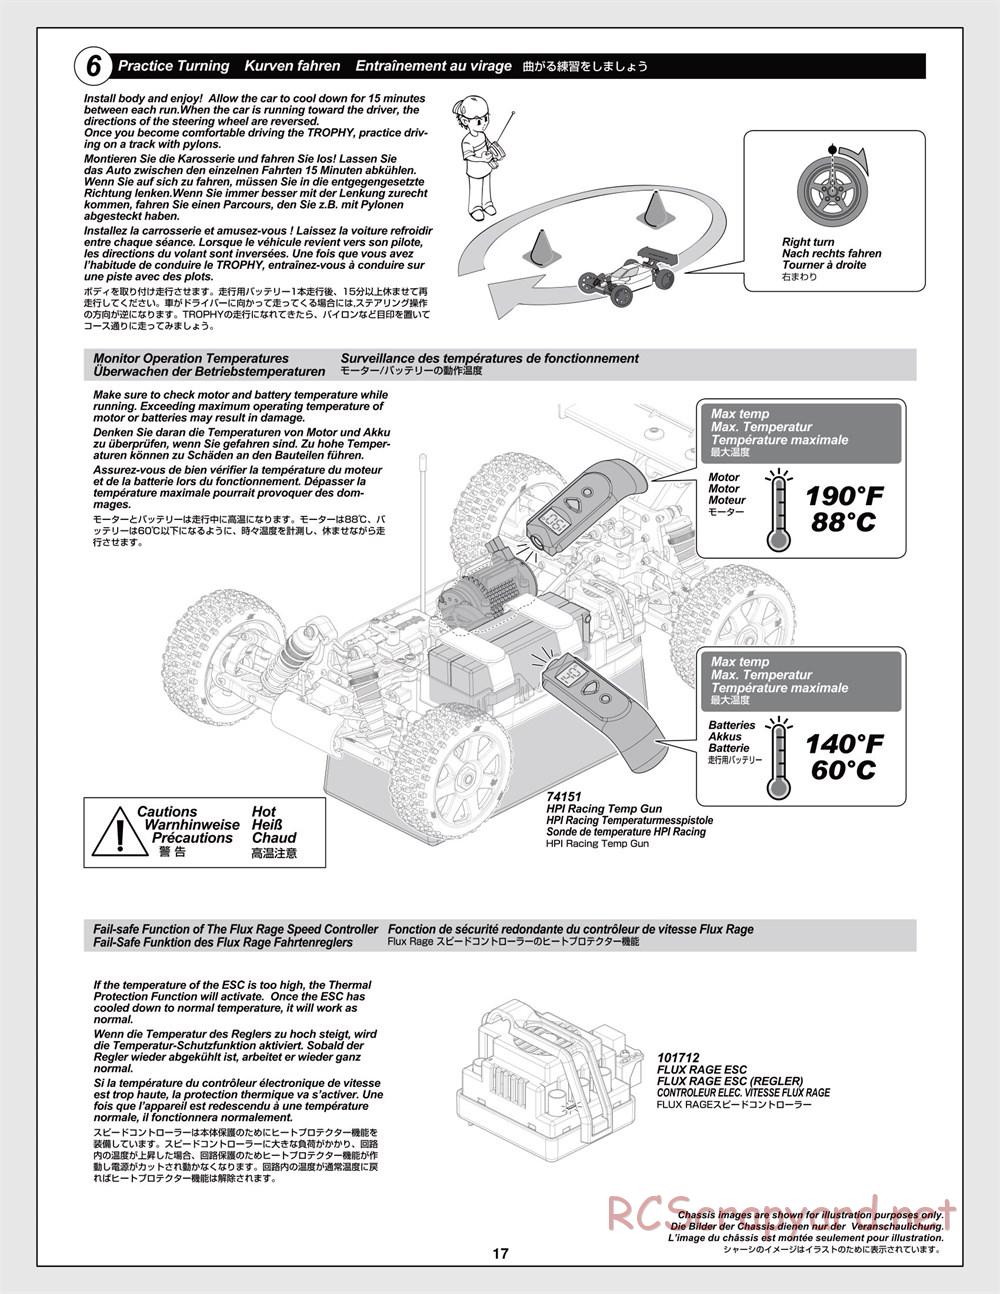 HPI - Trophy Flux Truggy - Manual - Page 17